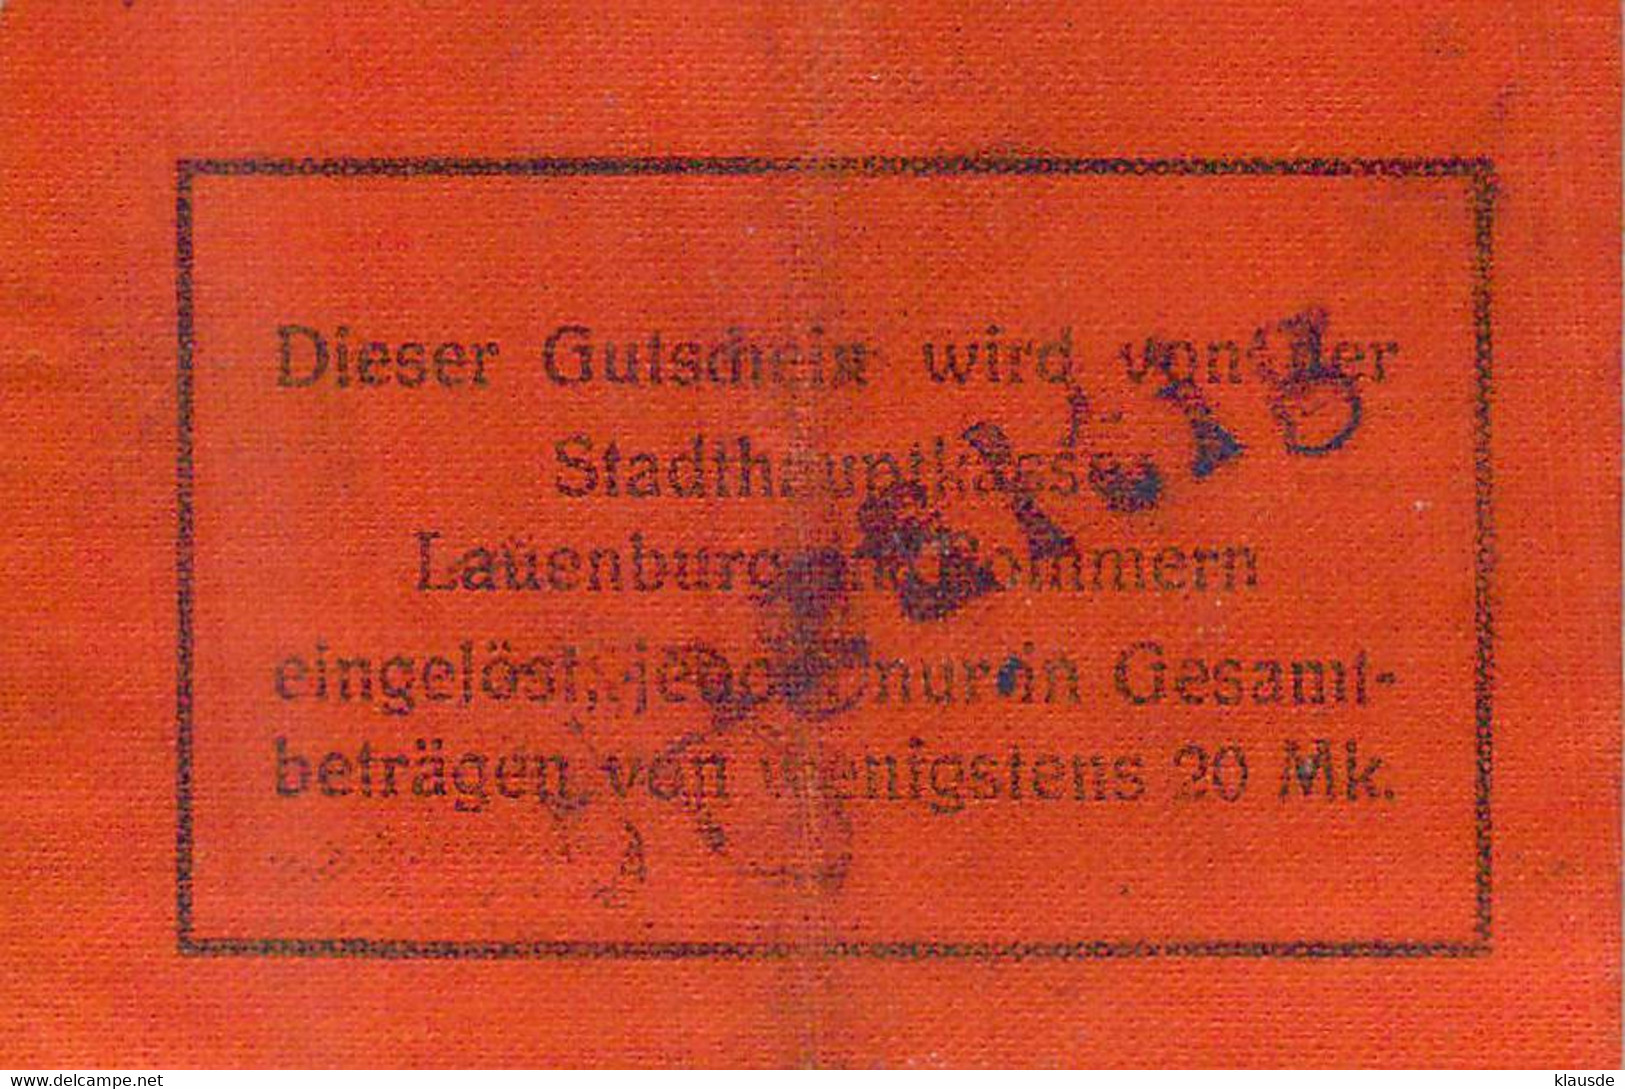 Lauenburg /Pom. (Leborg) Notgeld 1+2 MK Auf Leinenpapier - Primera Guerra Mundial